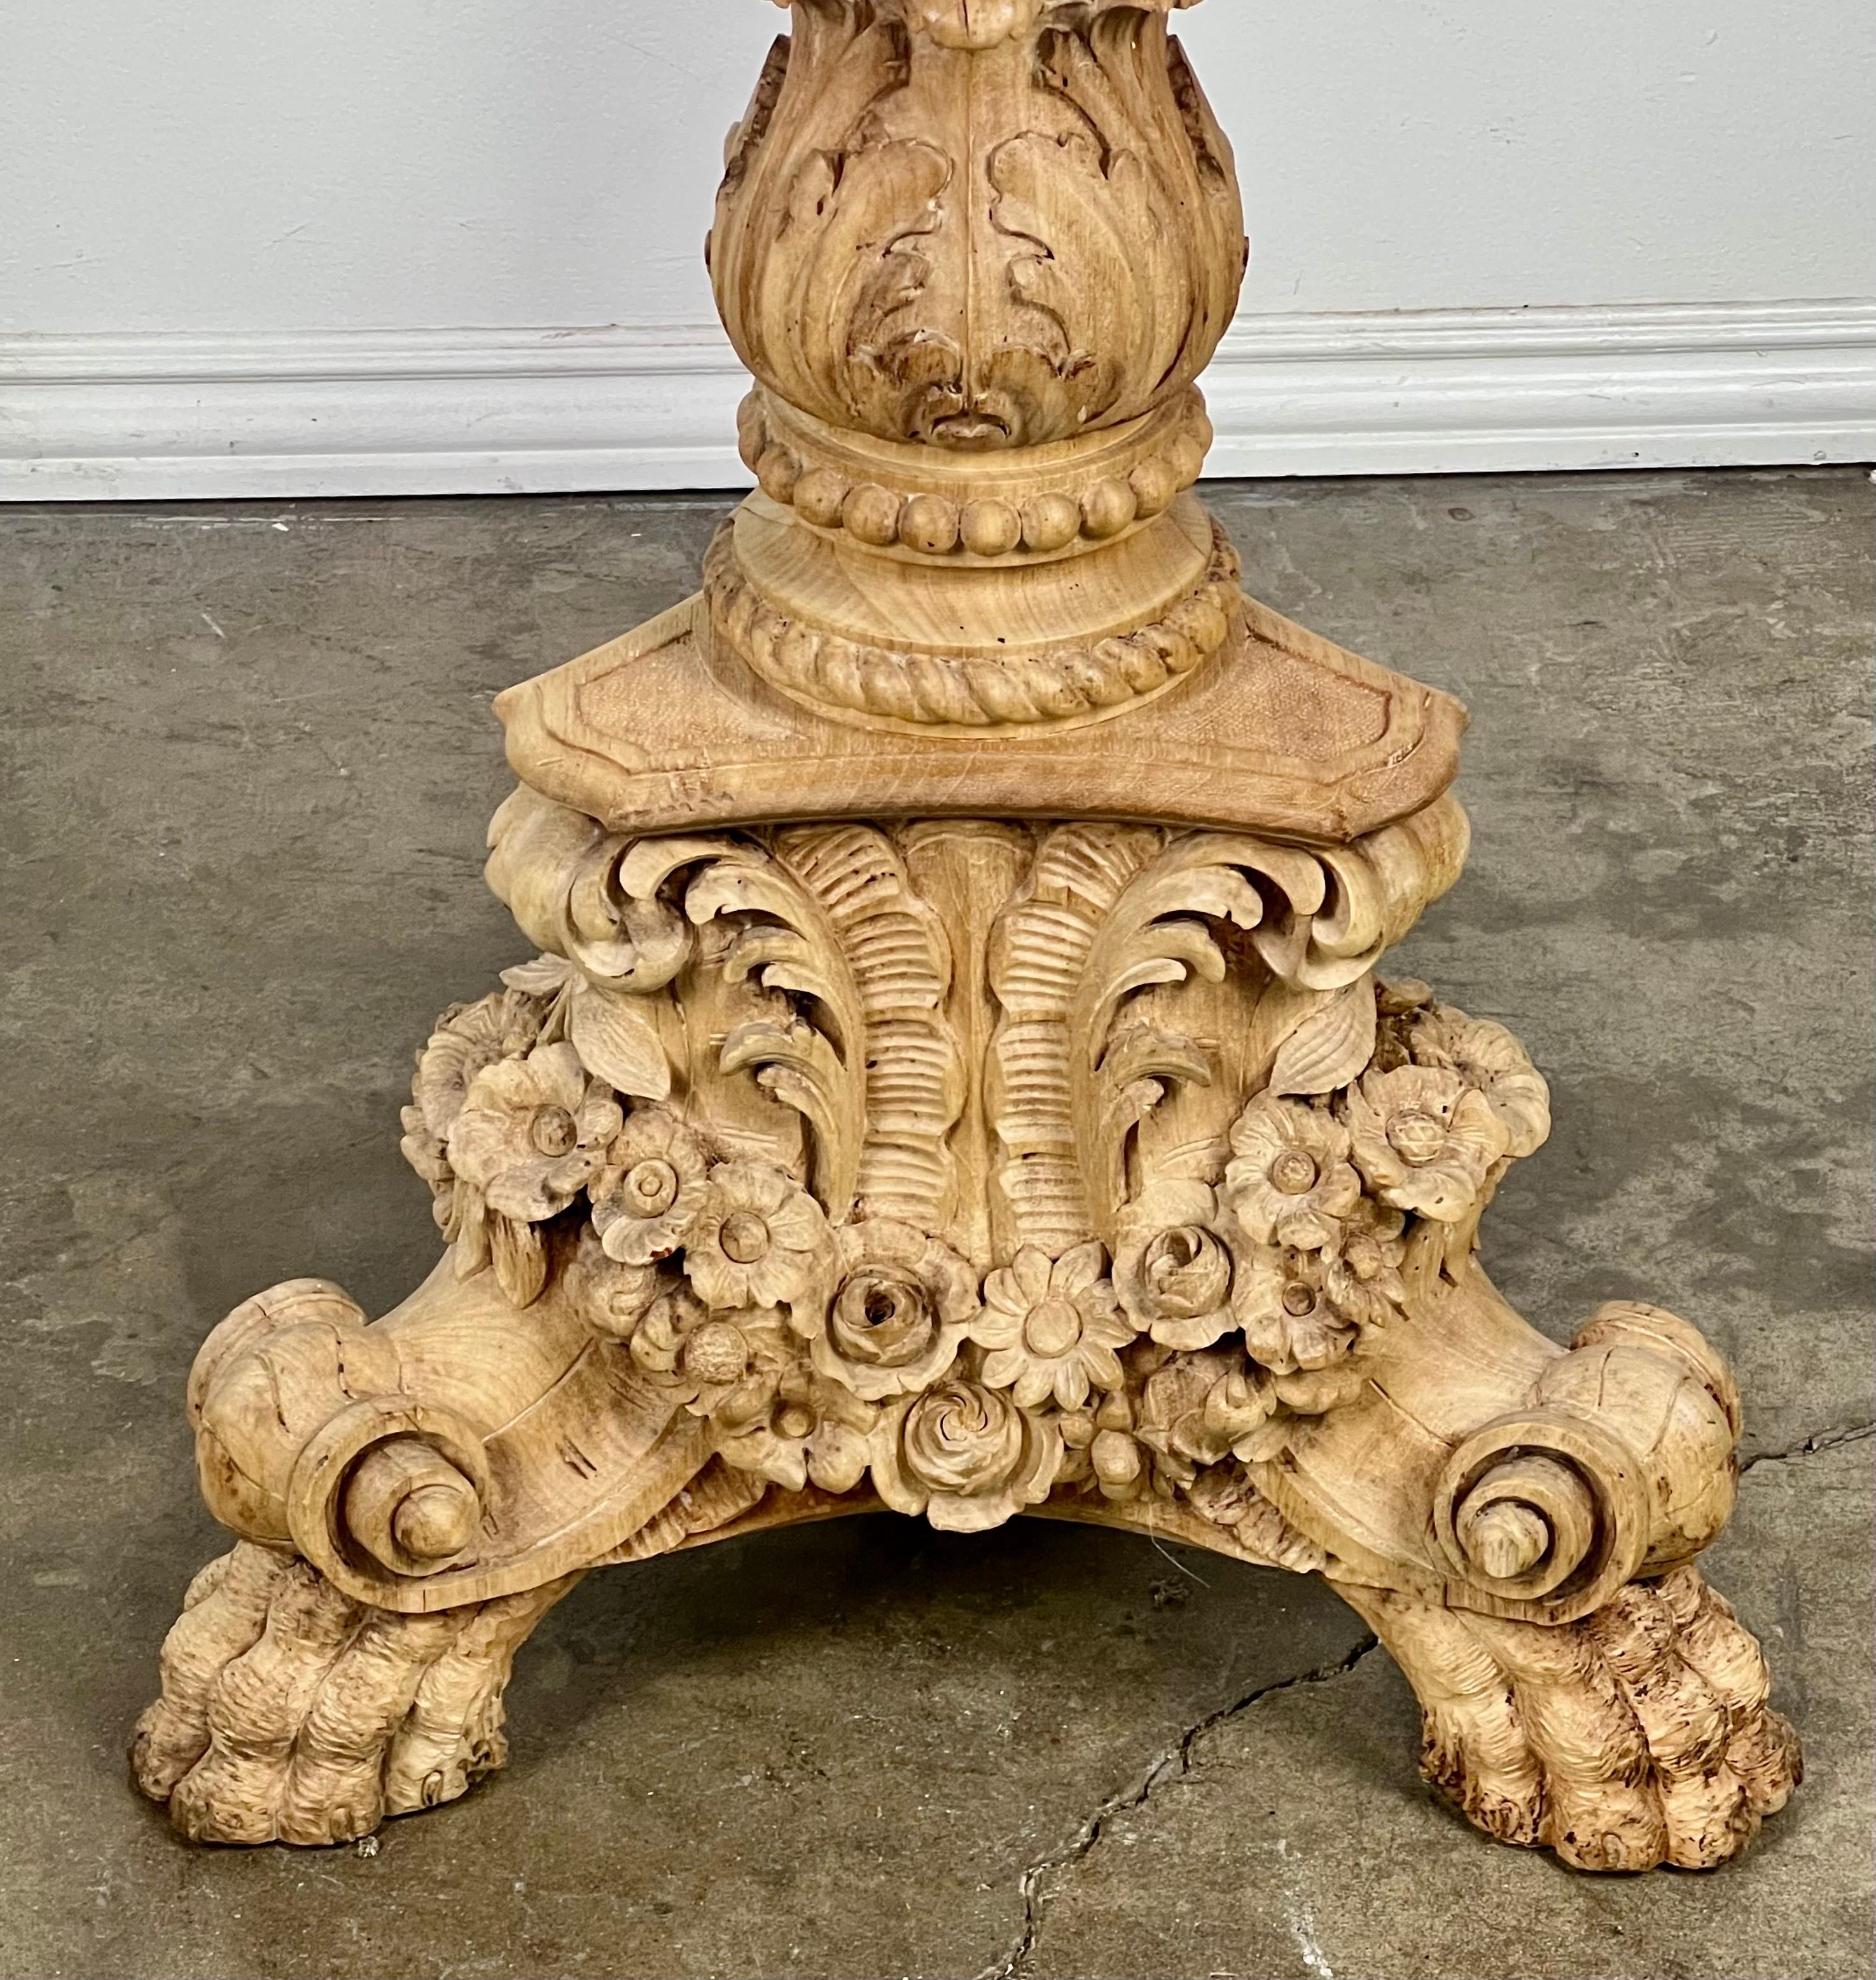 A.I.C., lampe sur pied en bois sculpté de style Louis XV.  La lampe a une base tripode et repose sur de magnifiques pieds sculptés.  La base est également décorée de fleurs, de feuilles d'acanthe et de rinceaux sculptés.  La lampe est en noyer